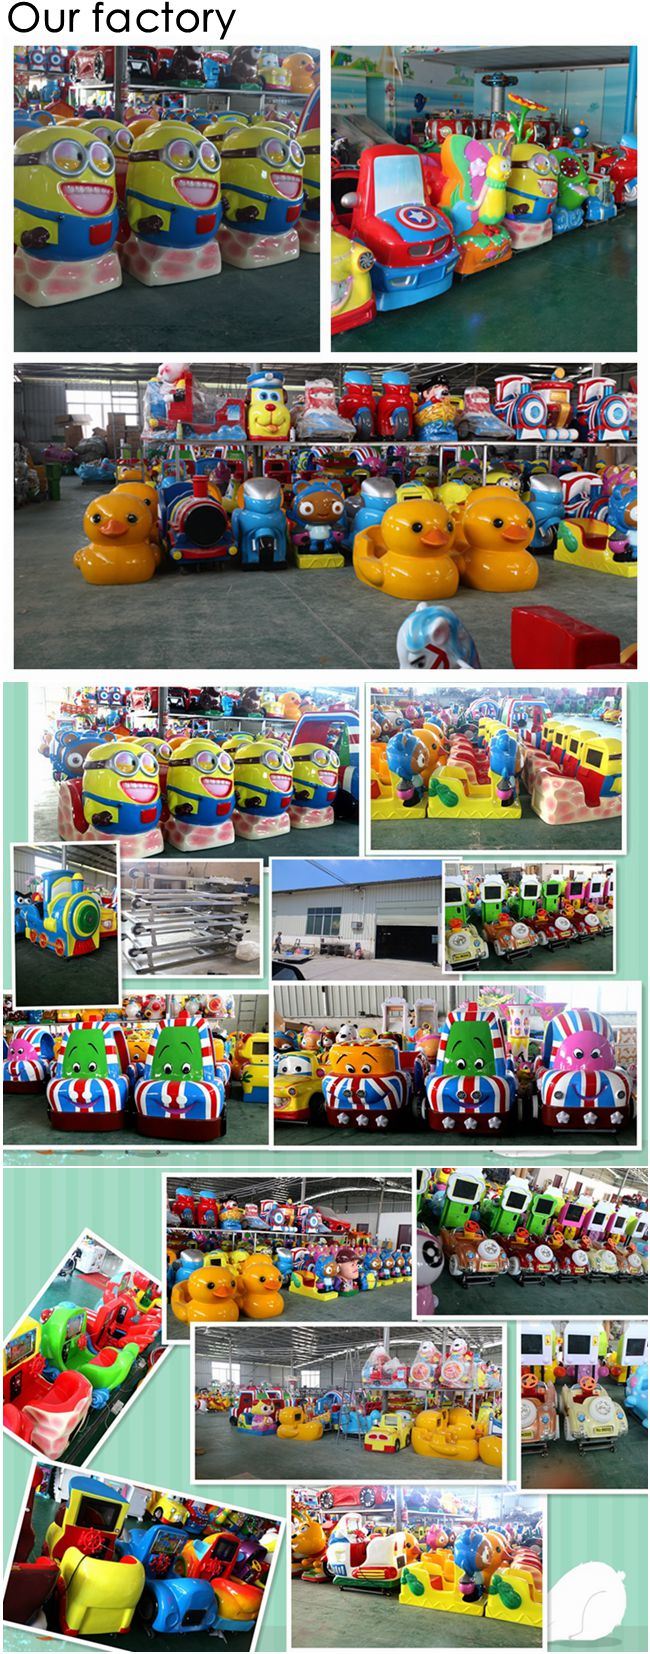 Park Playground Kiddie Ride Machine Indoor Playground Children Amusement Kiddie Ride